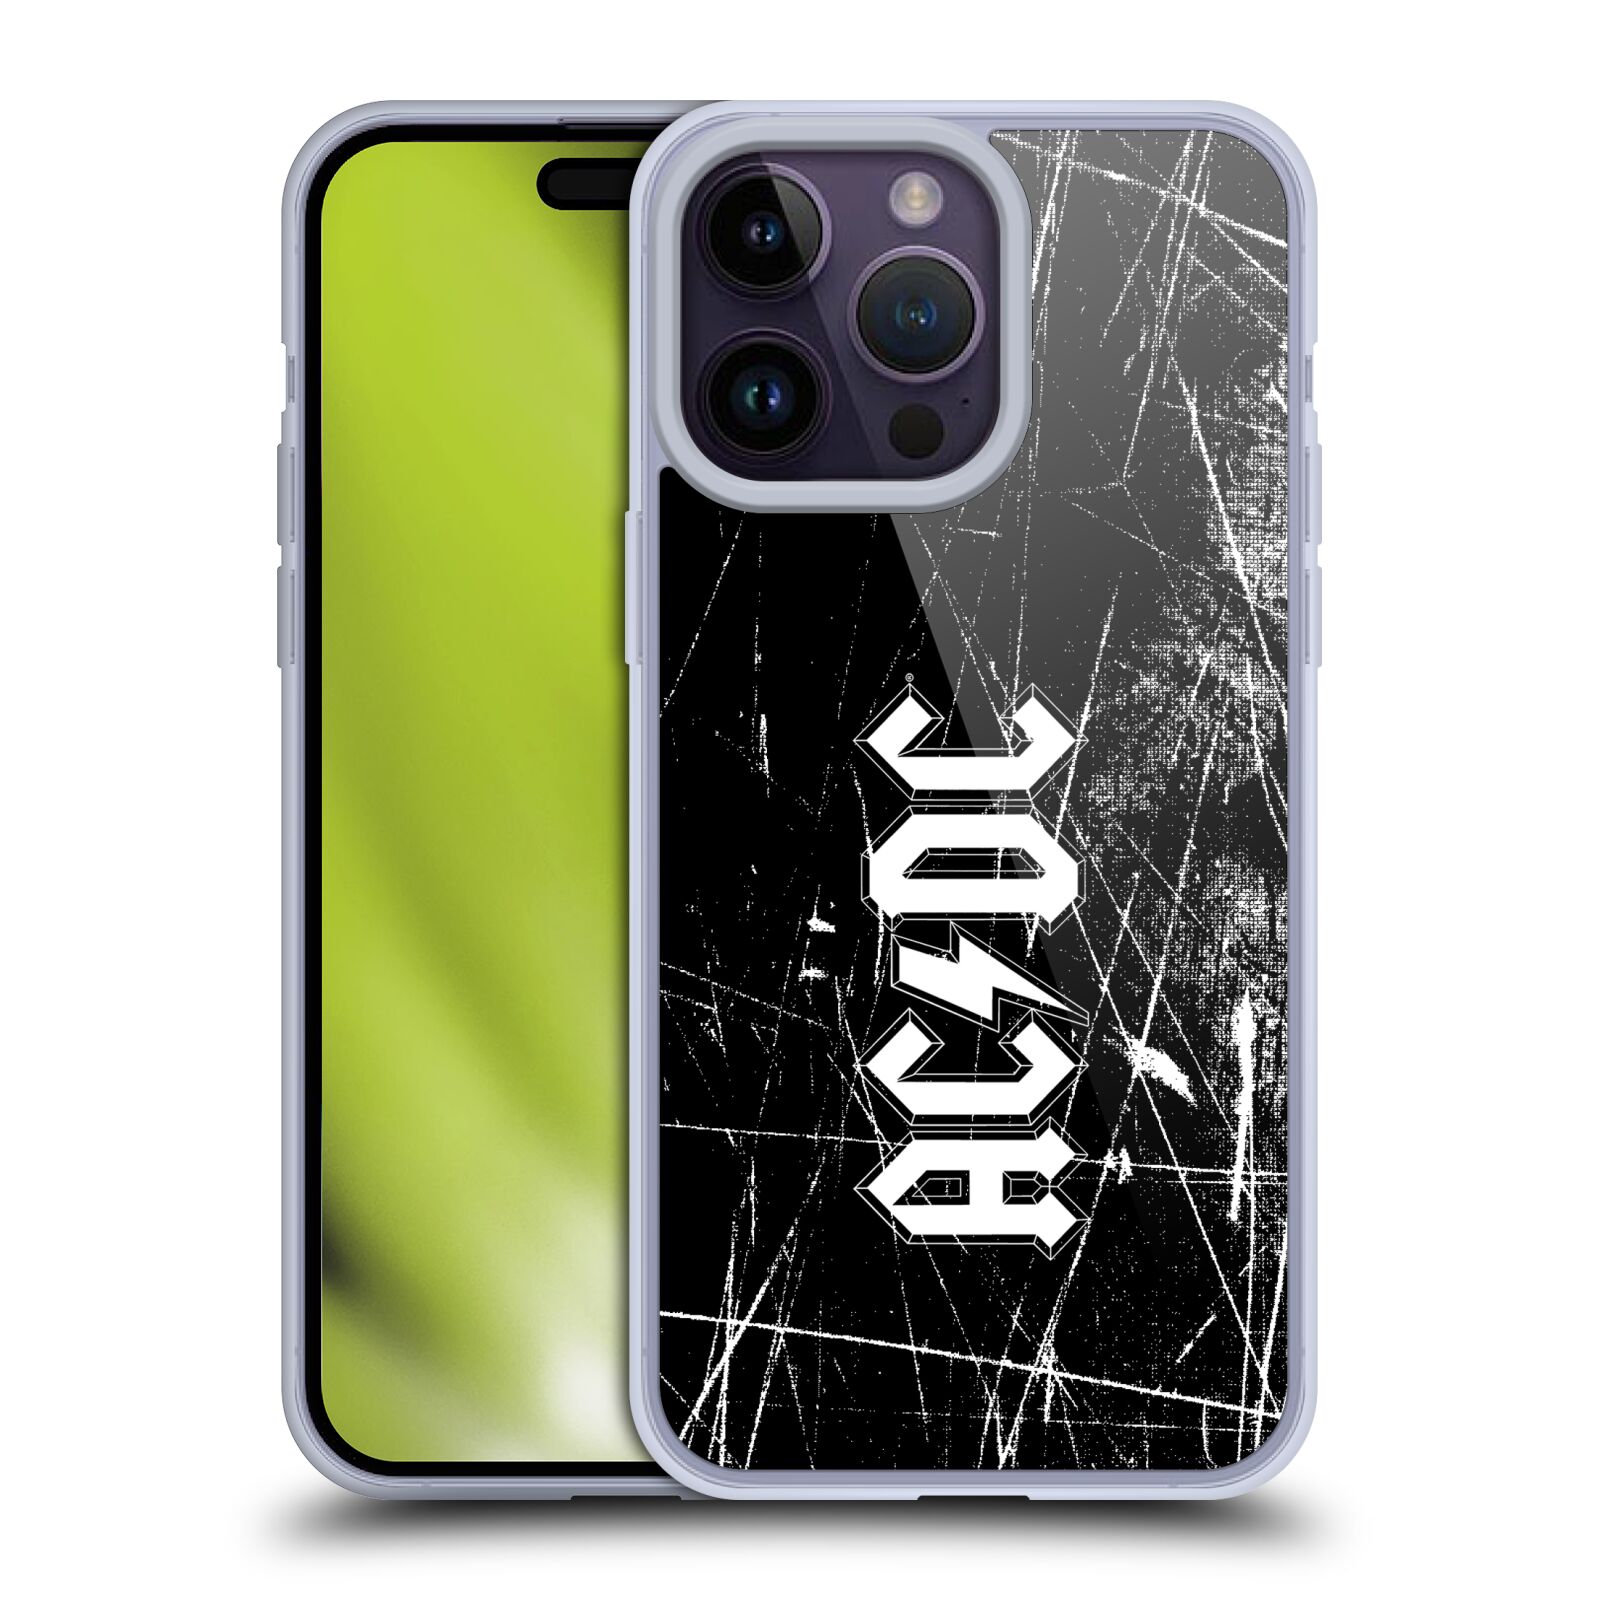 Silikonové pouzdro na mobil Apple iPhone 14 Pro Max - Head Case - AC/DC Černobílé logo